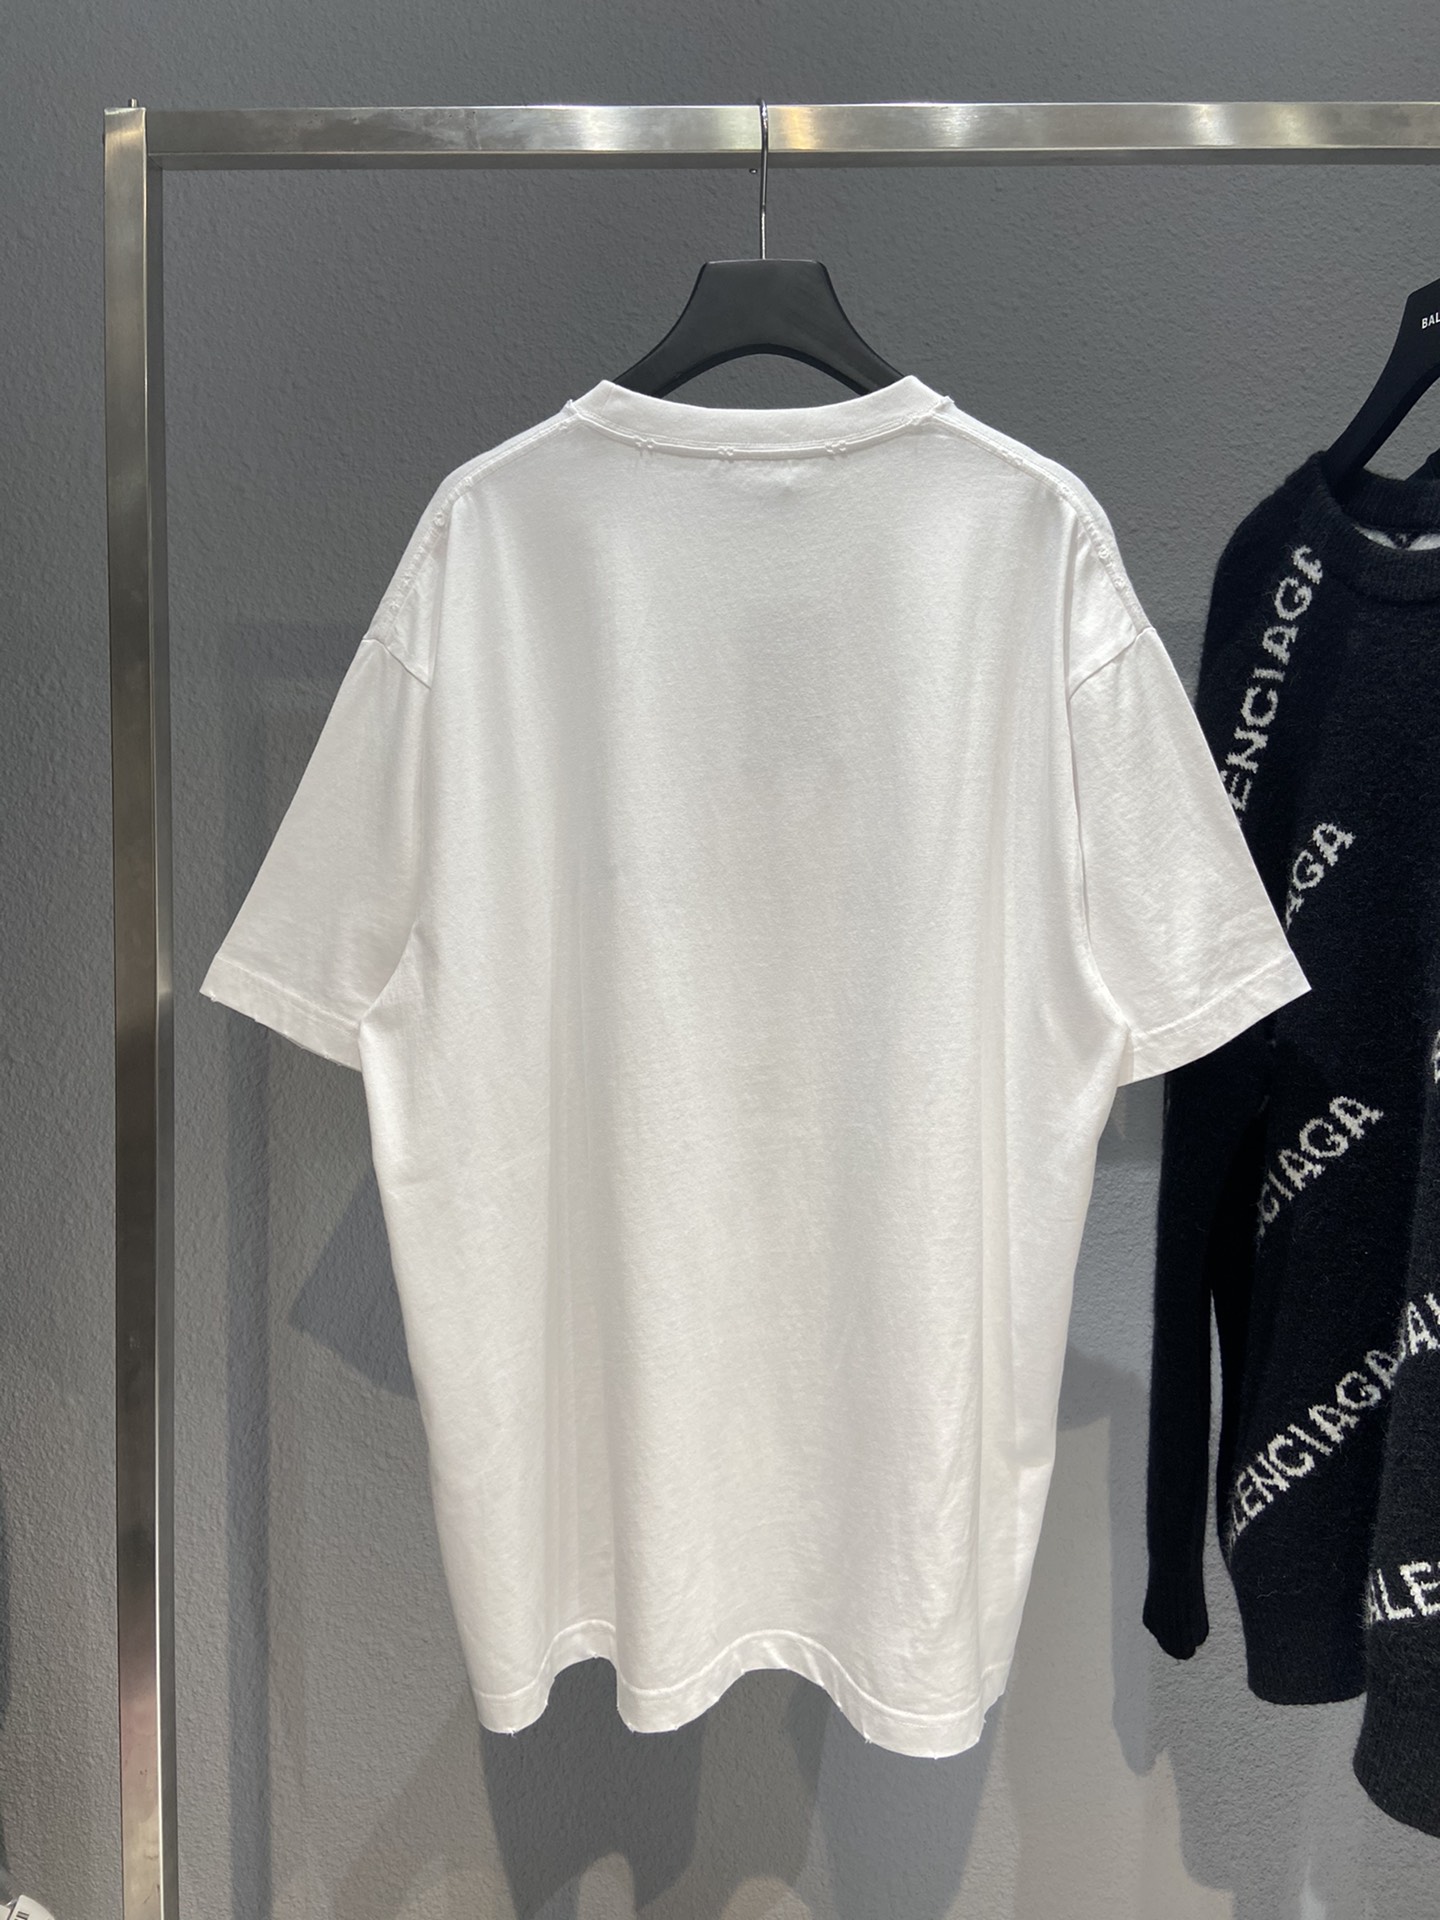 Balenciaga T-Shirt Printed in White